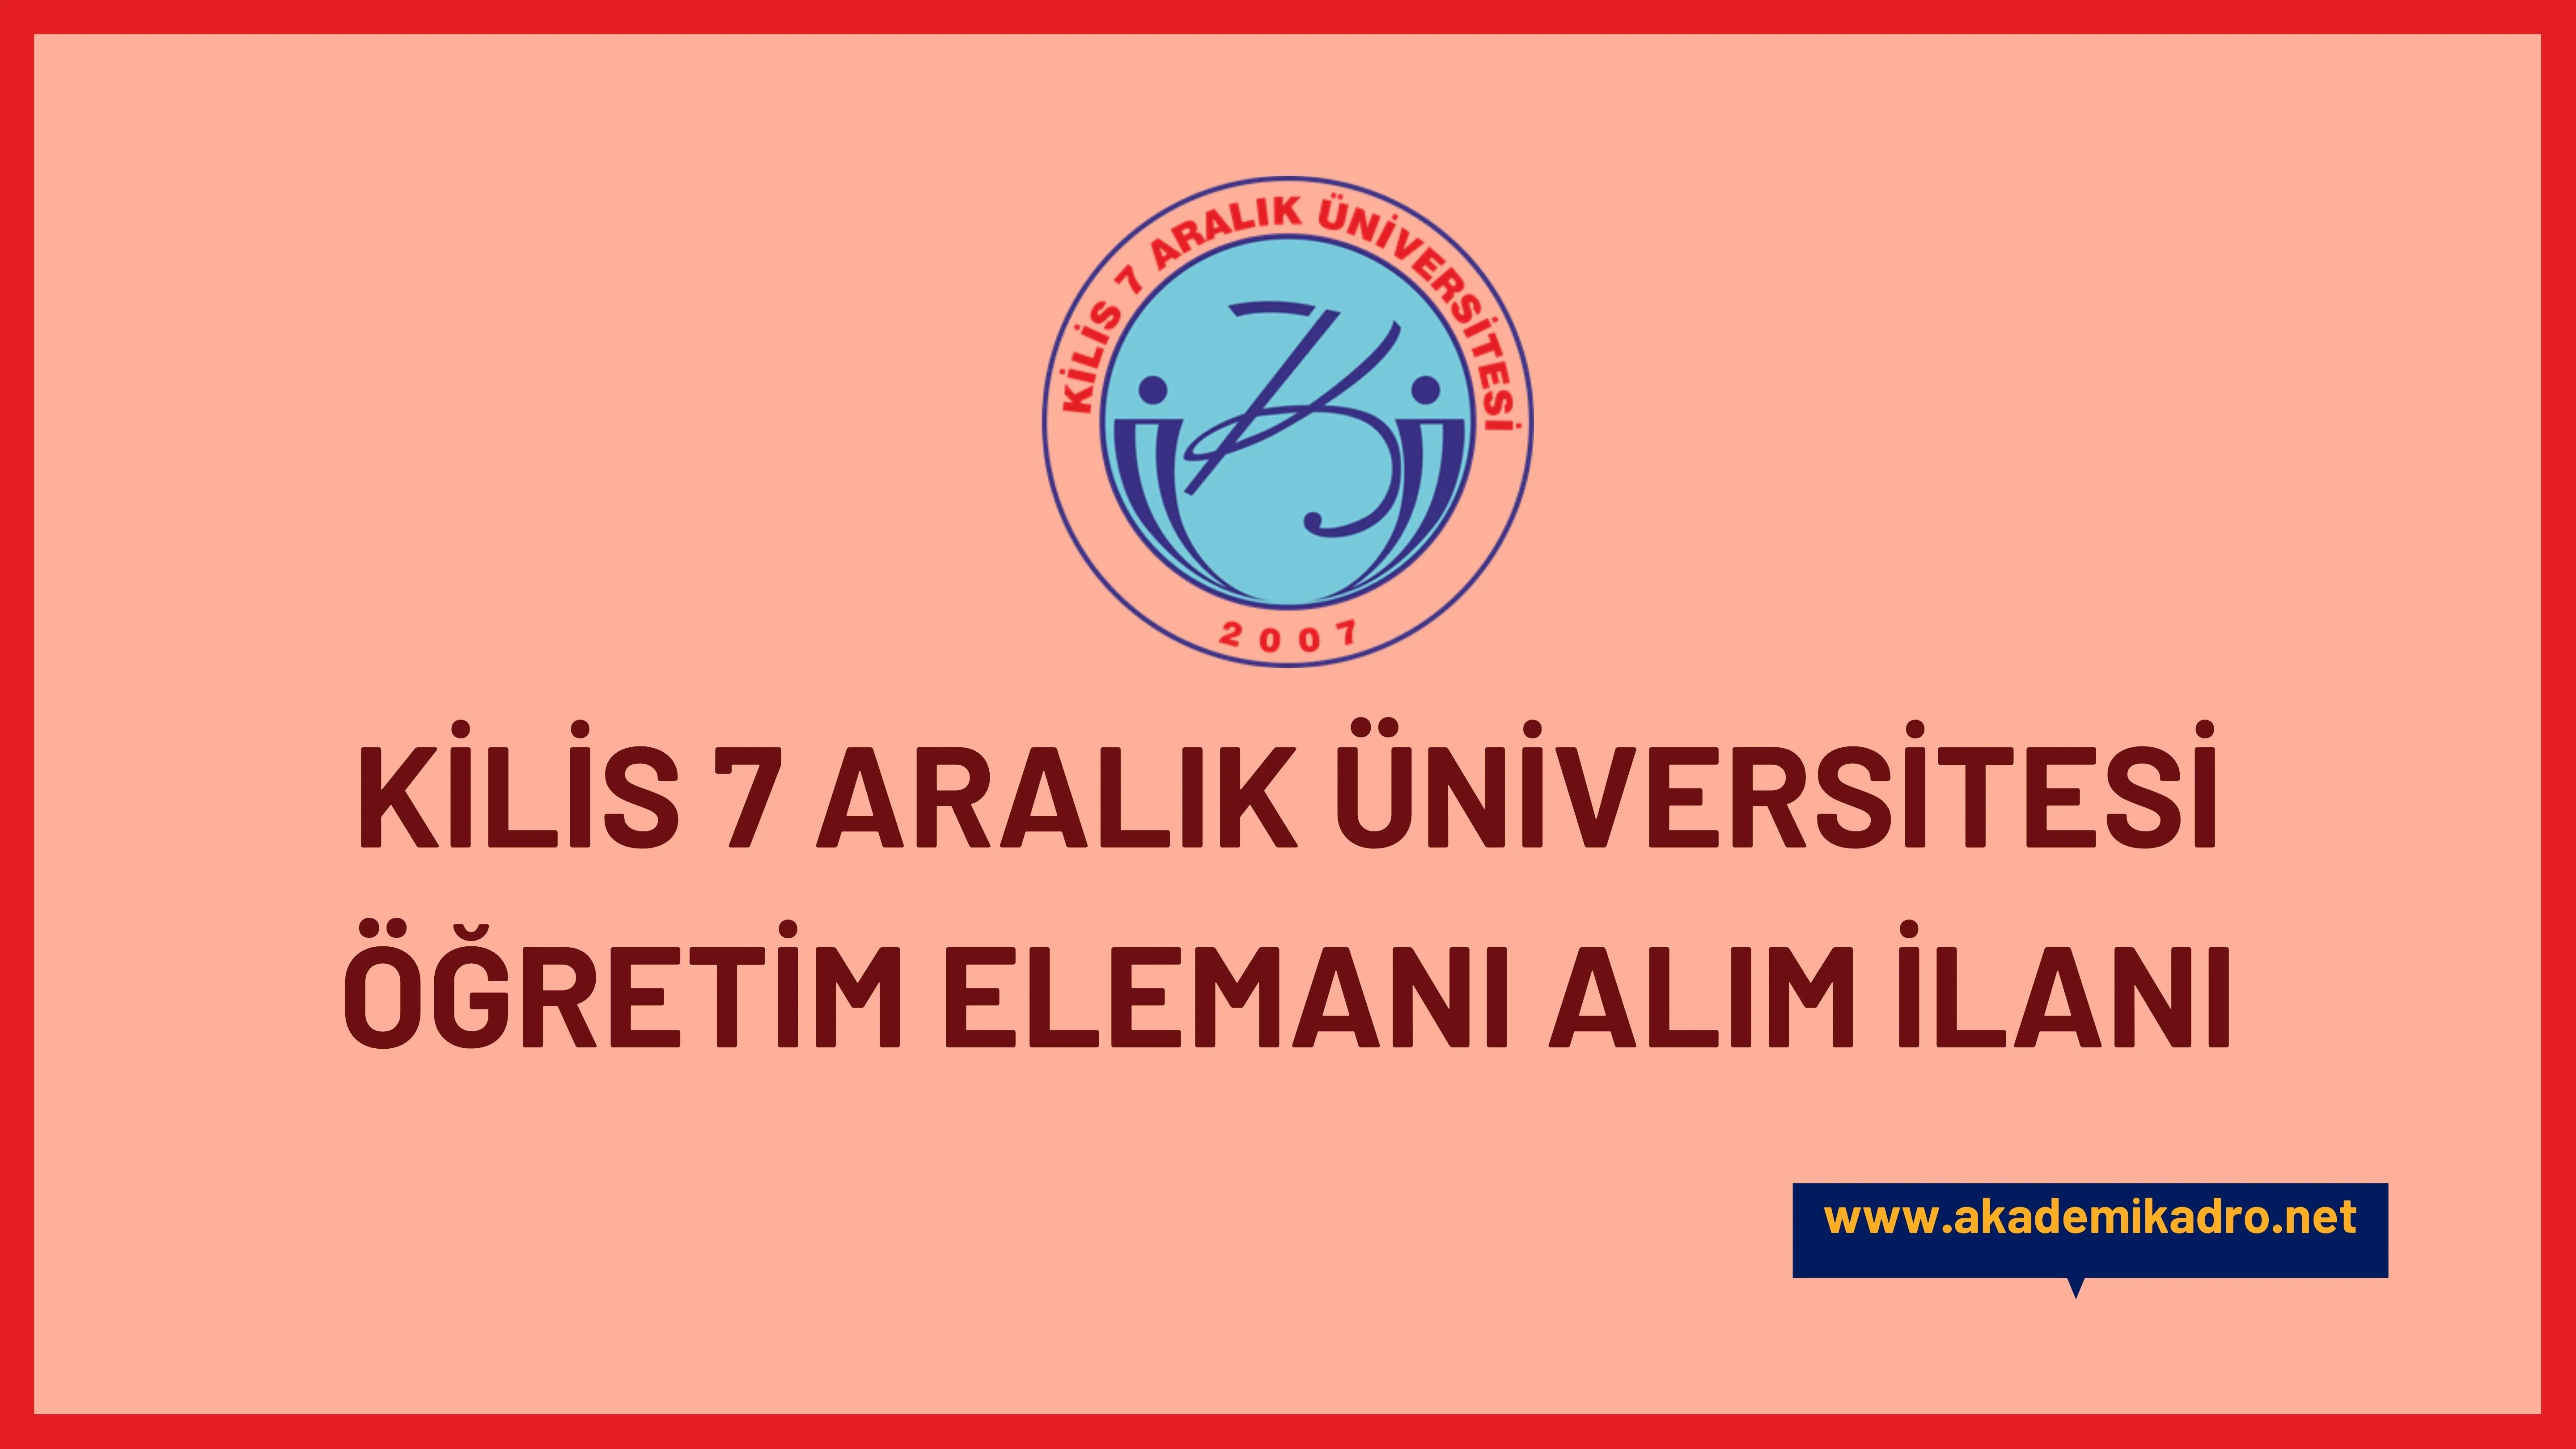 Kilis 7 Aralık Üniversitesi 5 Araştırma görevlisi, 6 Öğretim görevlisi ve 8 Öğretim üyesi alacak.